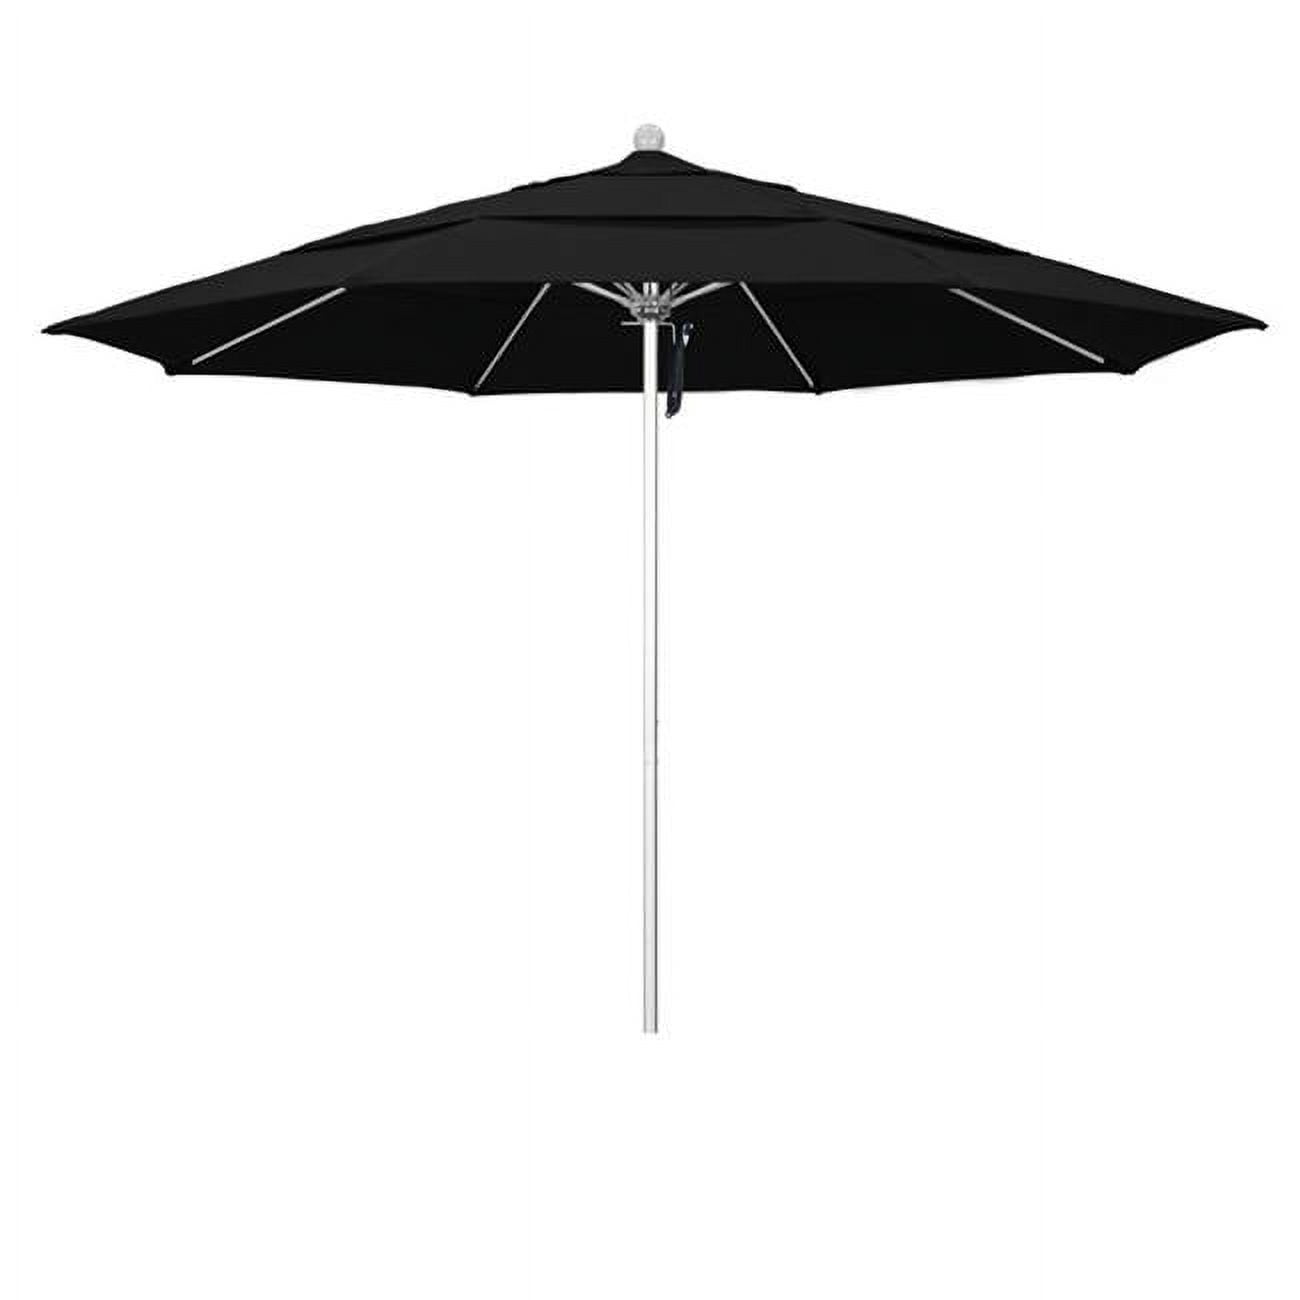 Alto118002-5408-dwv Venture Silver Market Umbrella, Black - 11 Ft. X 8 Ribs